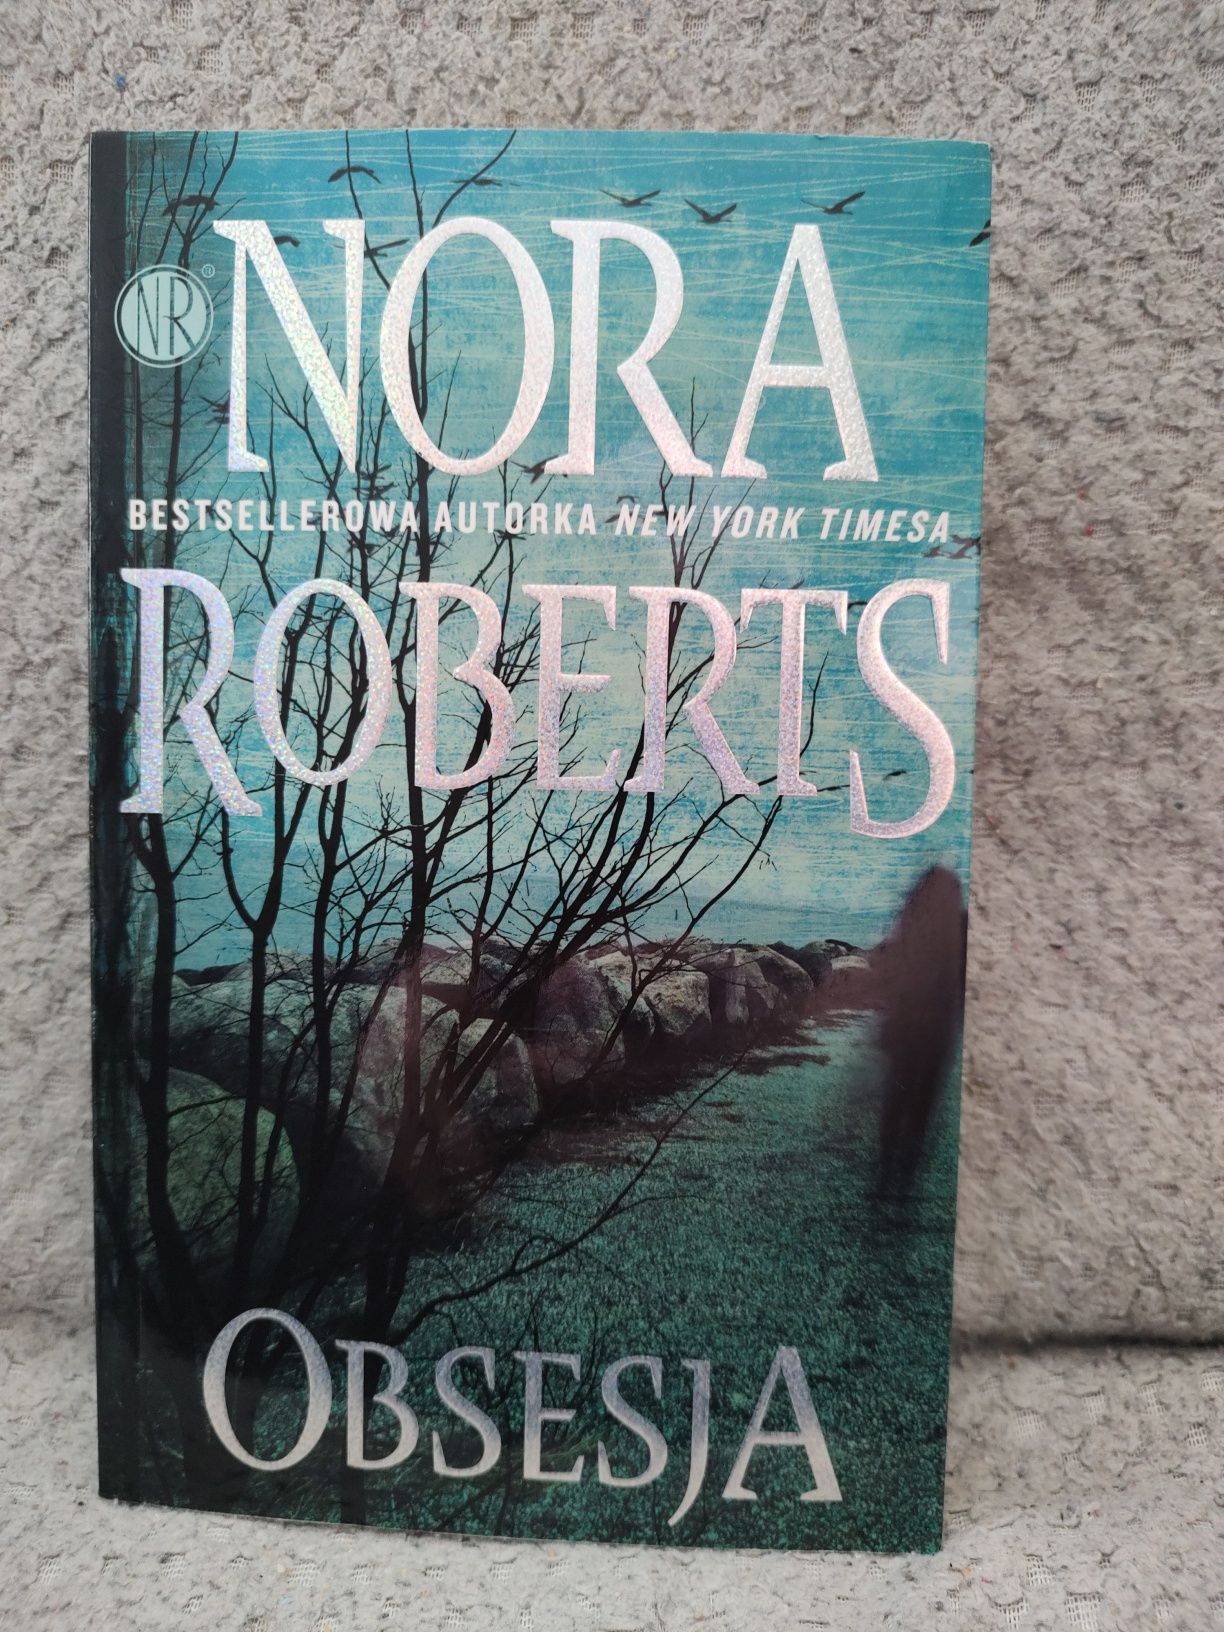 Książka Nora Roberts "Obsesja"